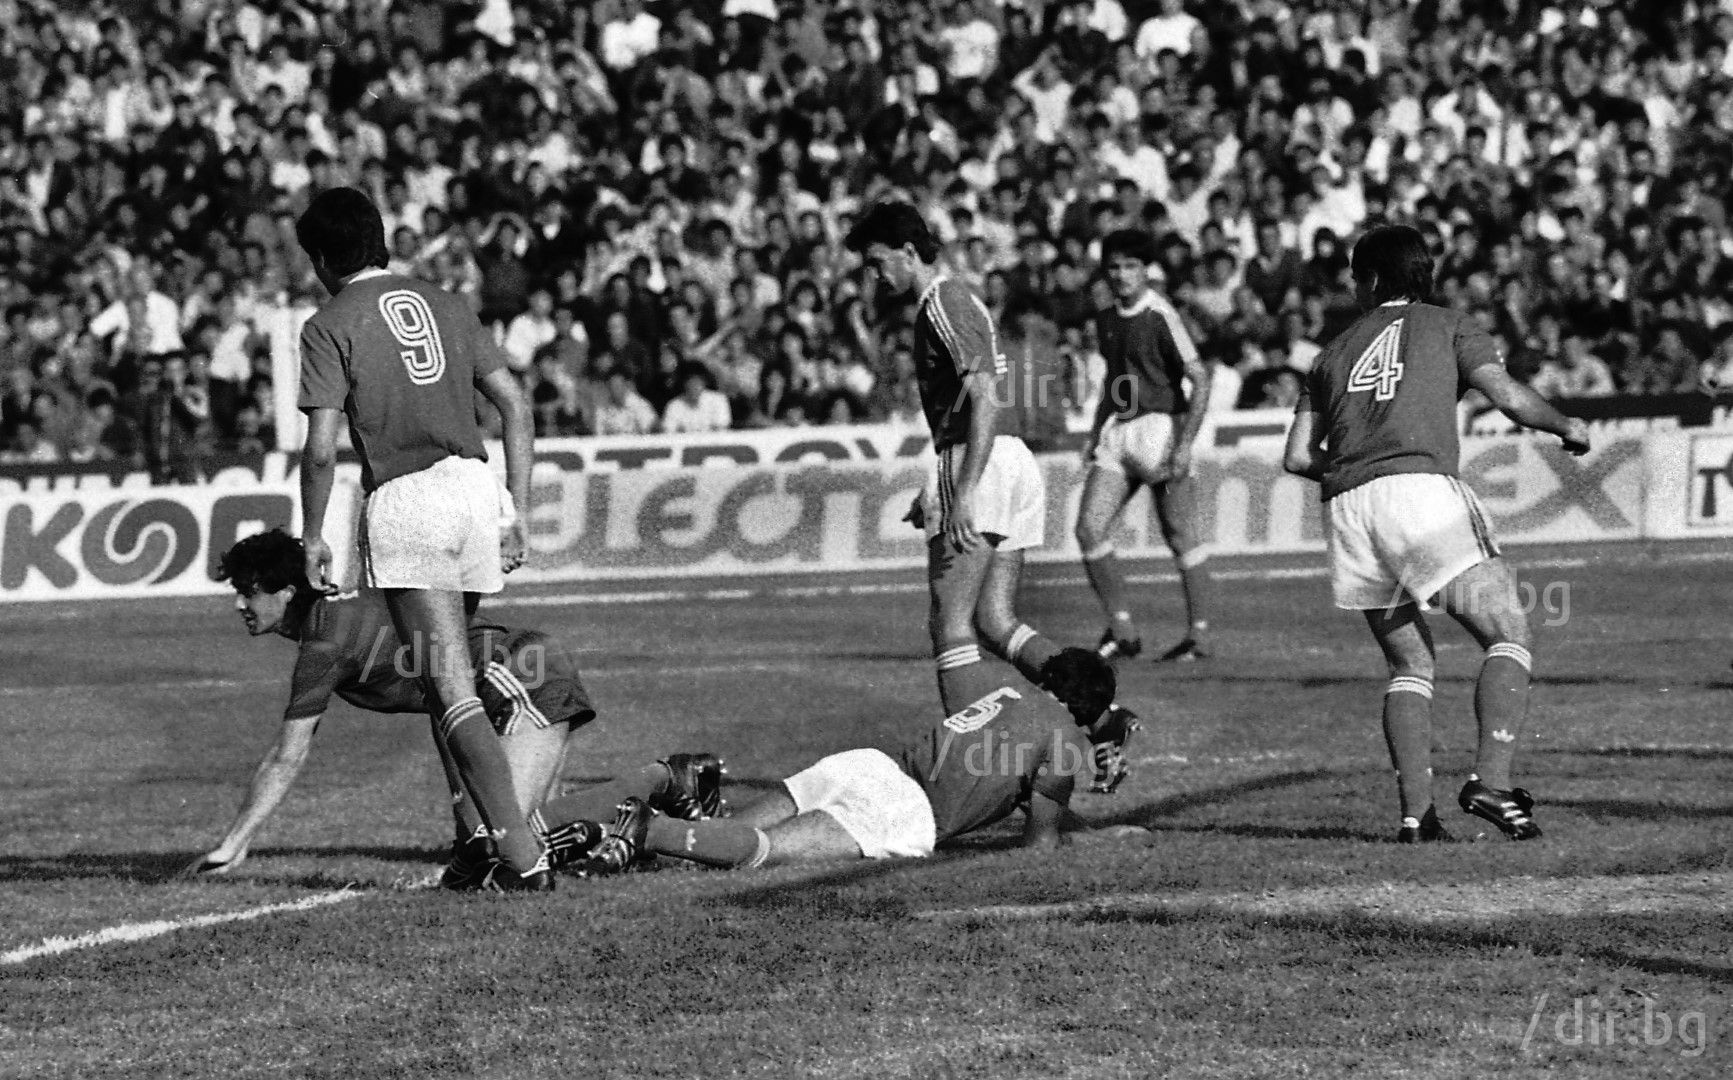 Напрегнат момент от същия финал, игран на 13 май 1987 г. на стадион "Васил Левски"